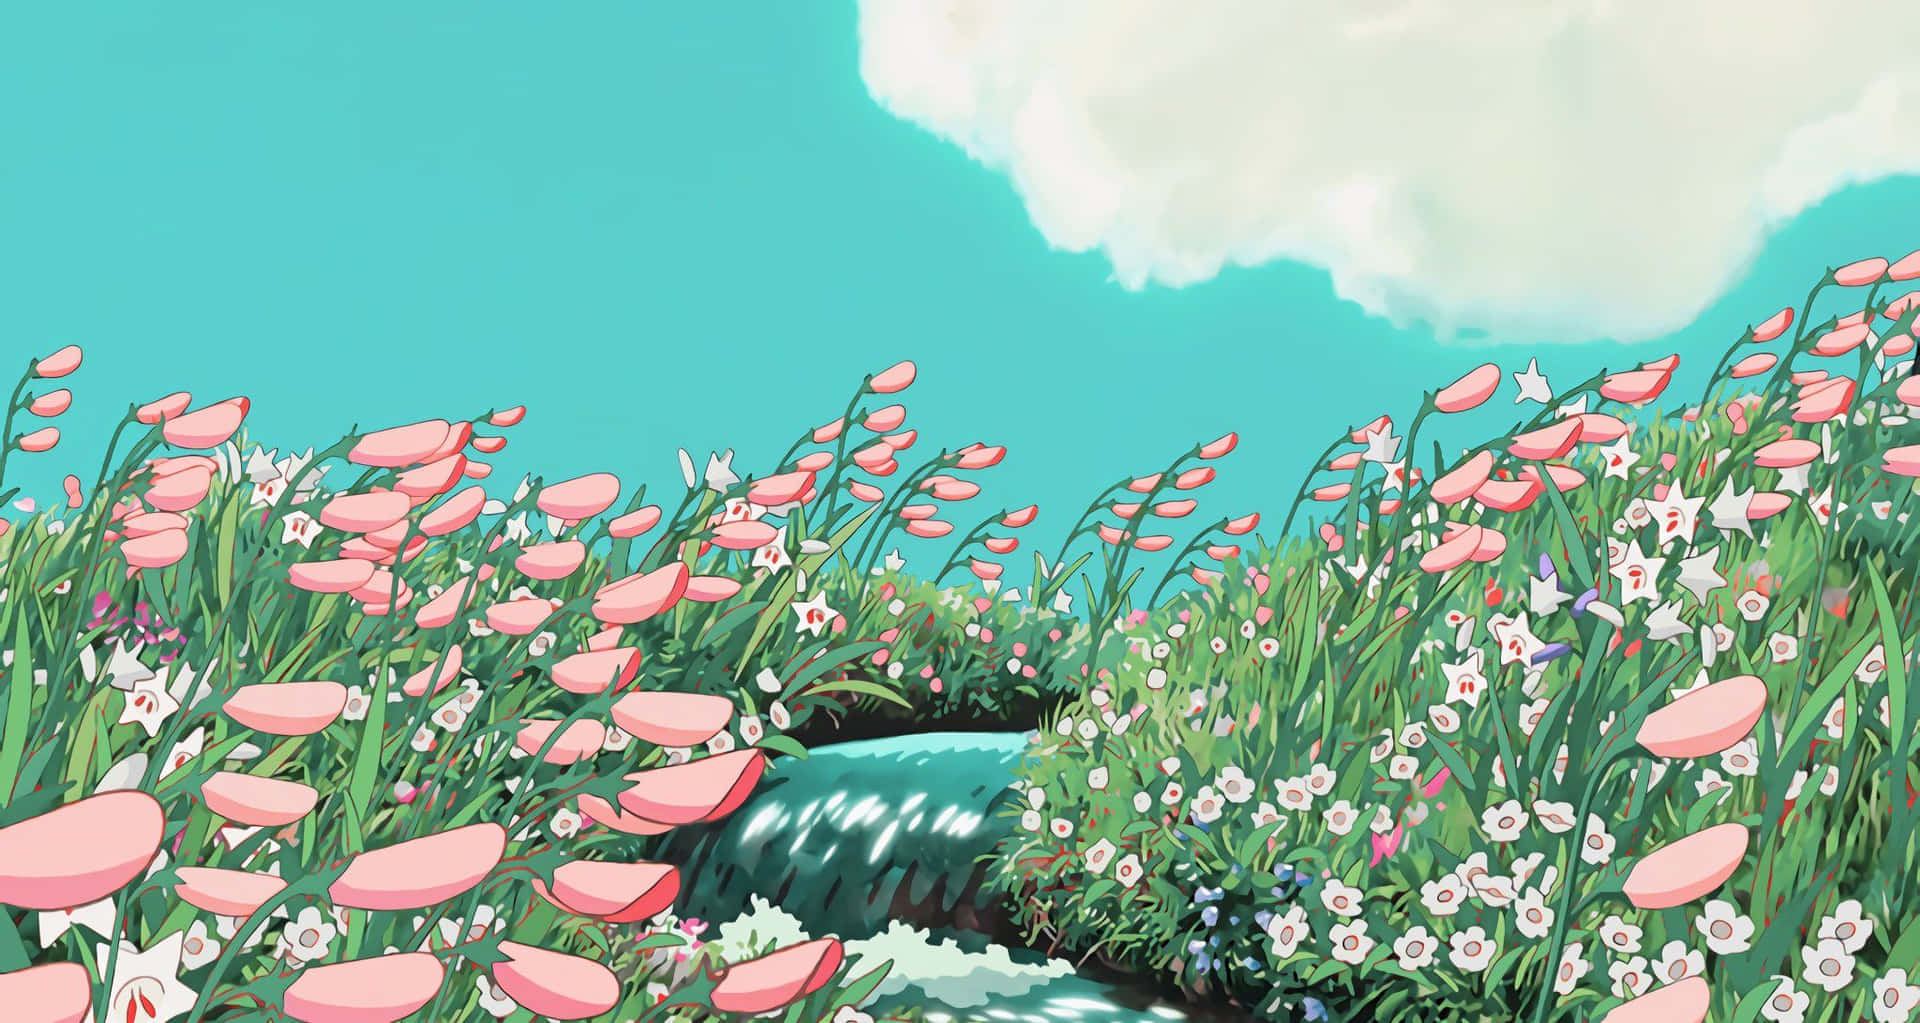 Ghibli Inspired Floral Meadow Wallpaper